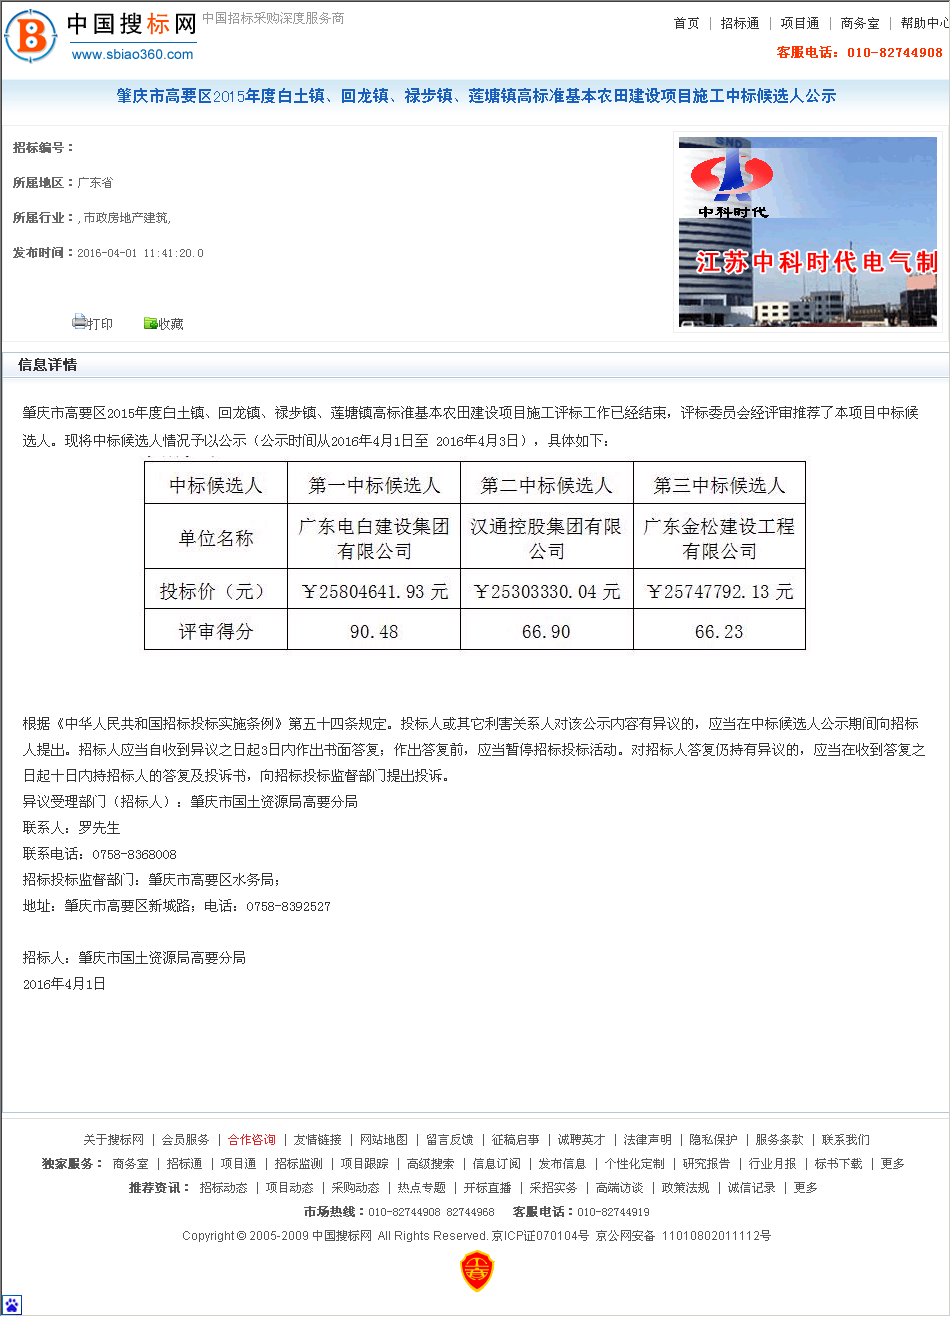 广东电白建设集团有限公司